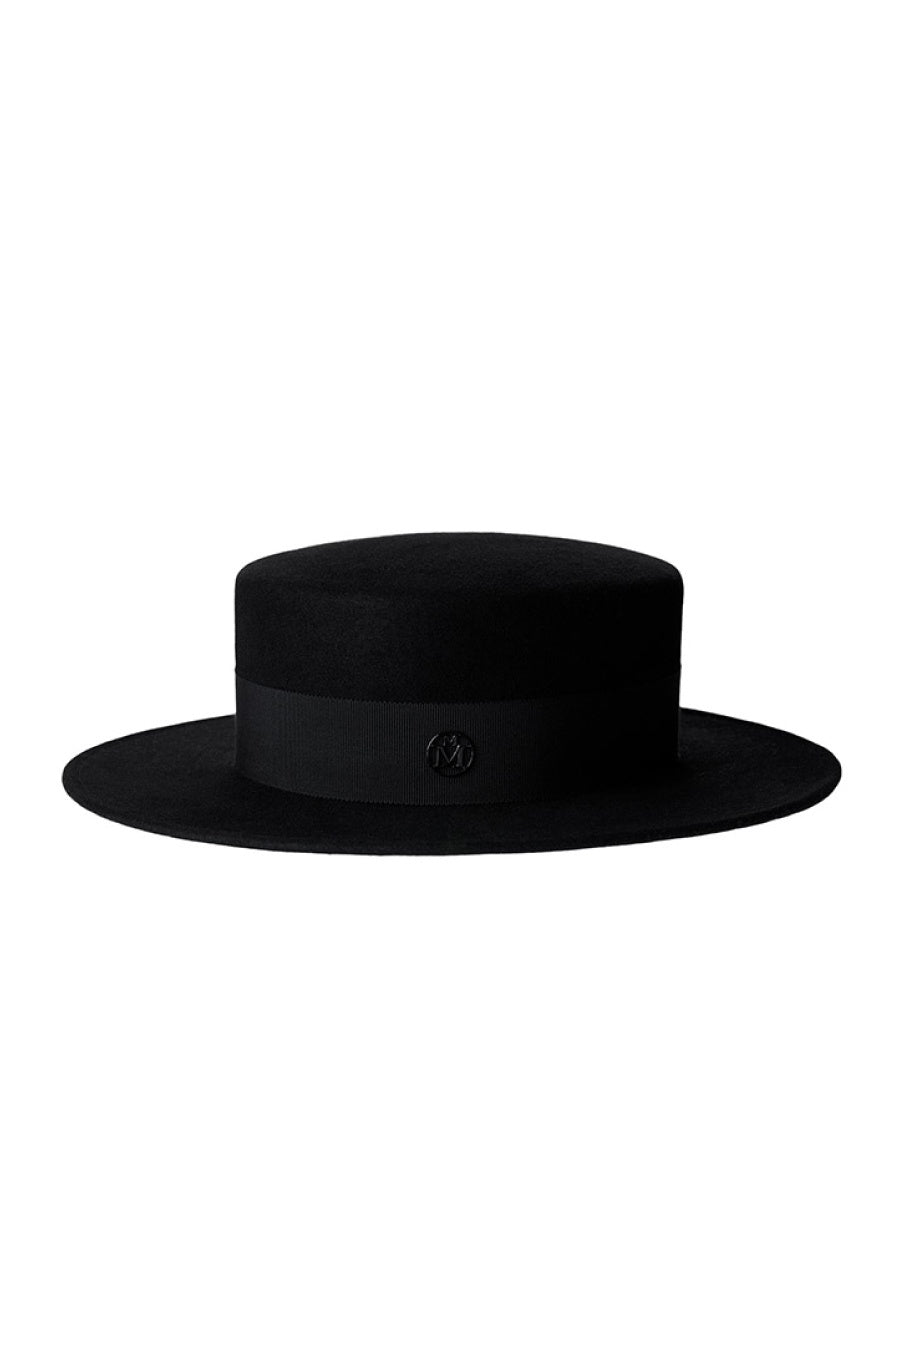 Maison Michel Kiki Felt Hat - Black